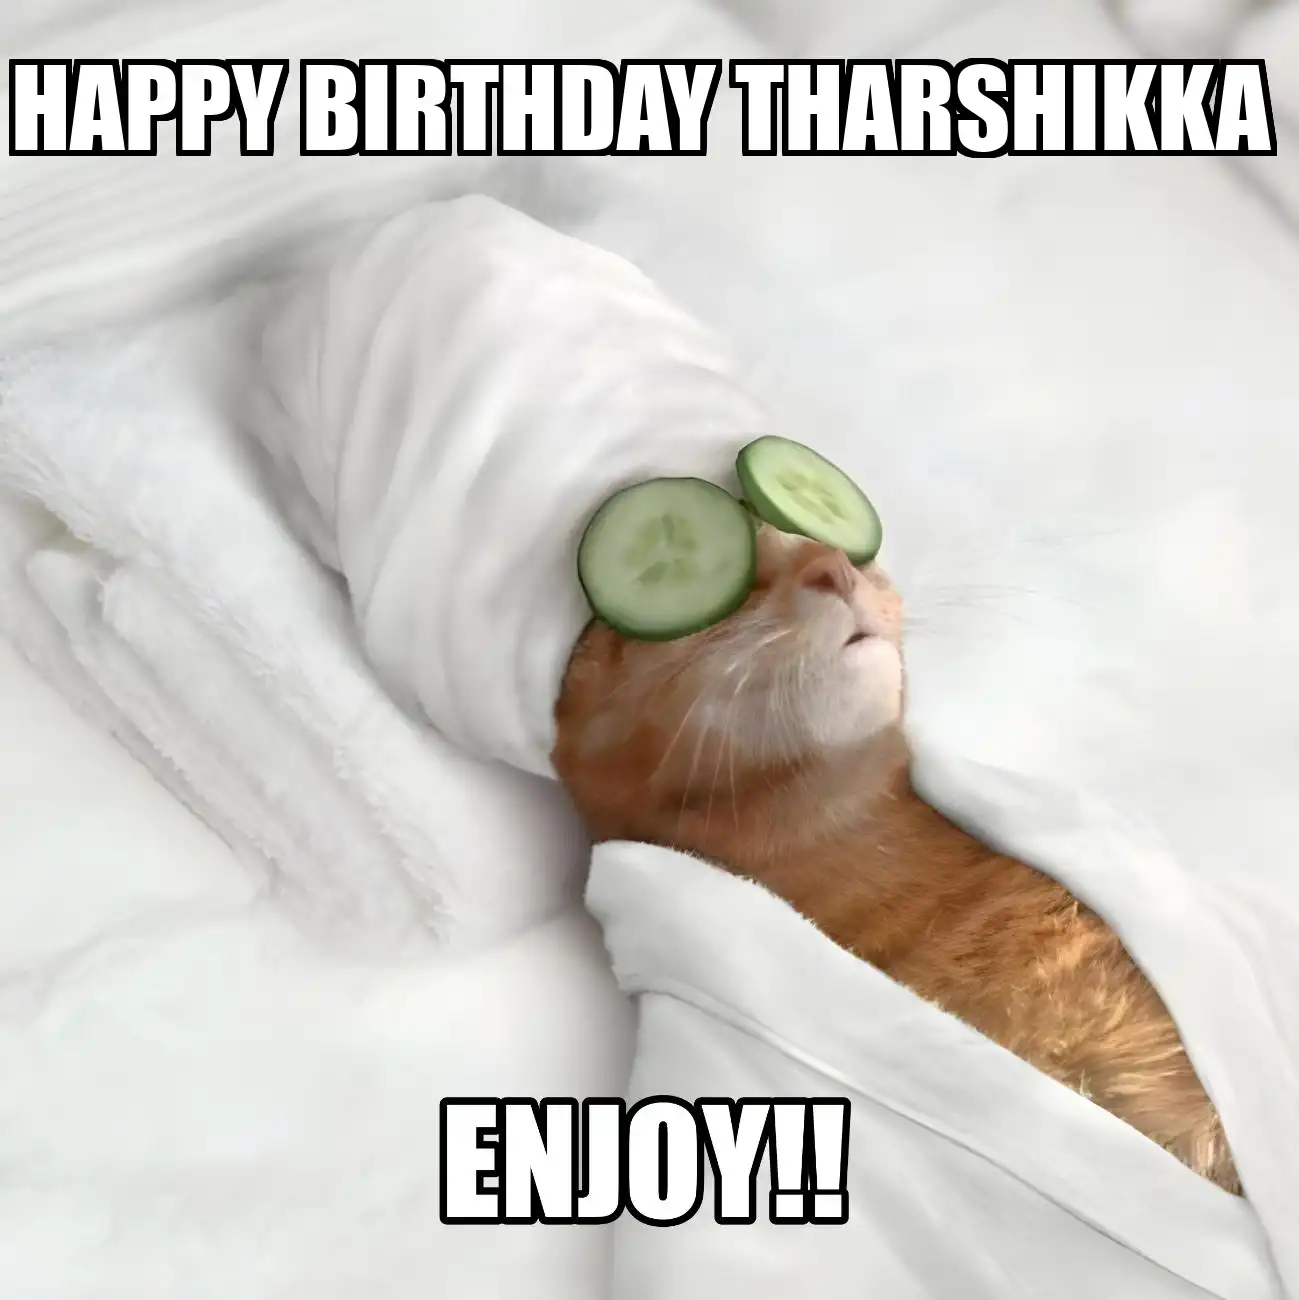 Happy Birthday Tharshikka Enjoy Cat Meme